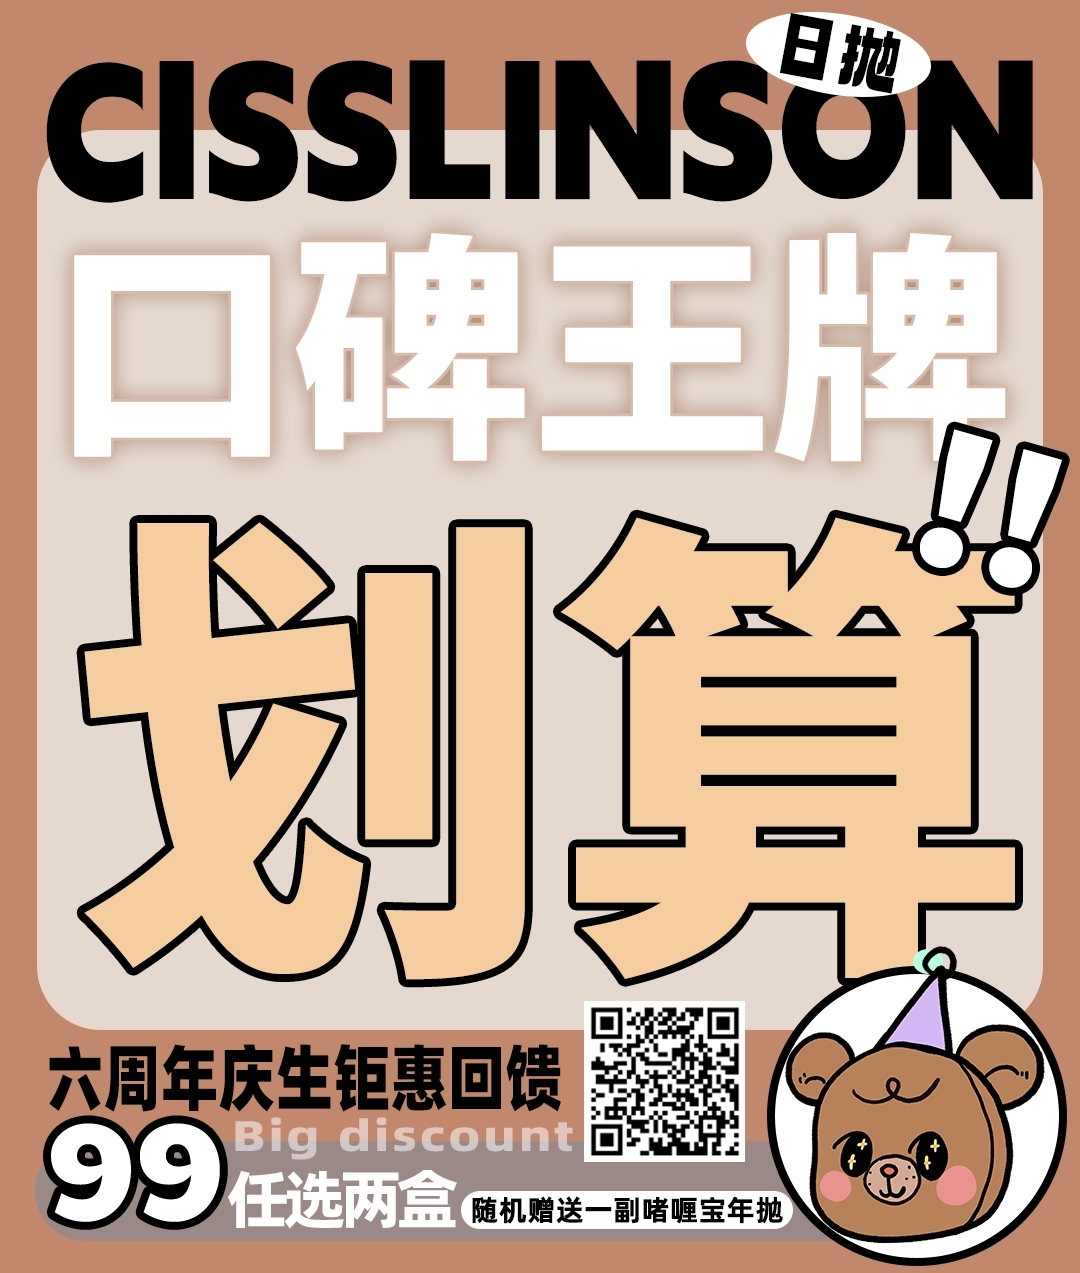 【日抛秒杀】CISSLINSON 六周年庆生钜惠回馈 买日抛送年抛啦